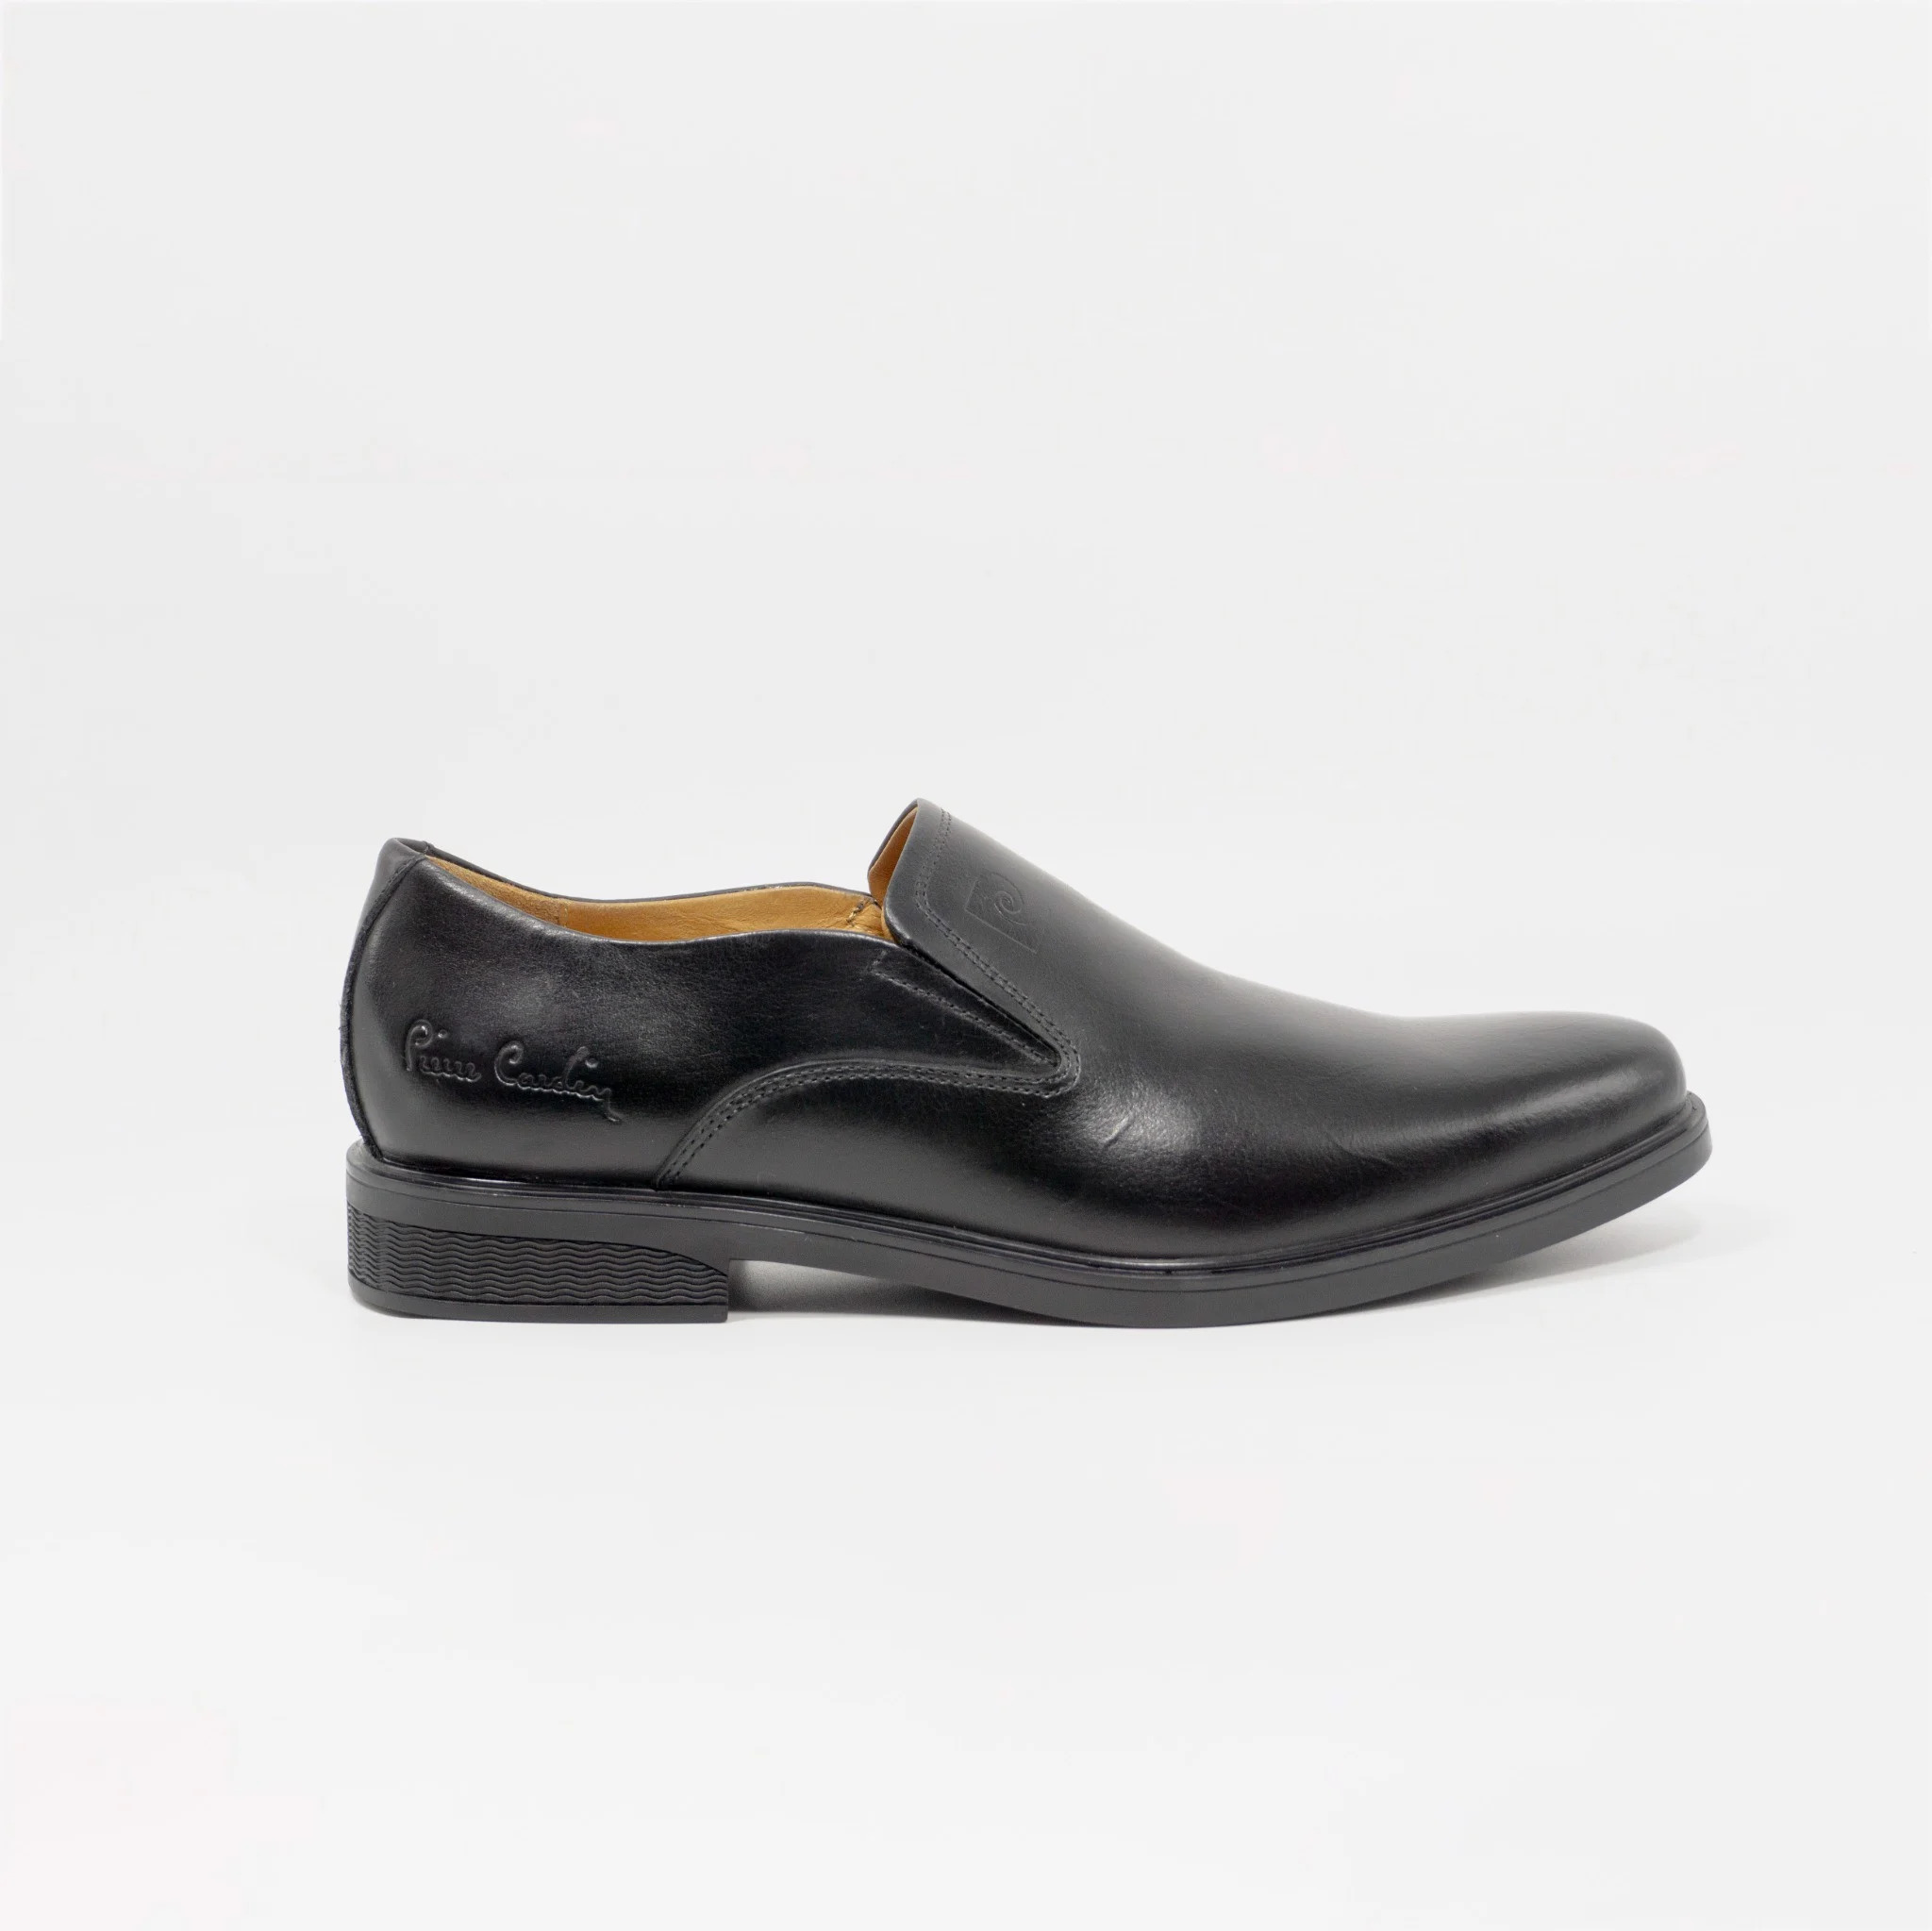 Giày lười da nam không dây Pierre Cardin PCMFWL 346, họa tiết da bóng, thiết kế đơn giản, phù hợp mọi nơi